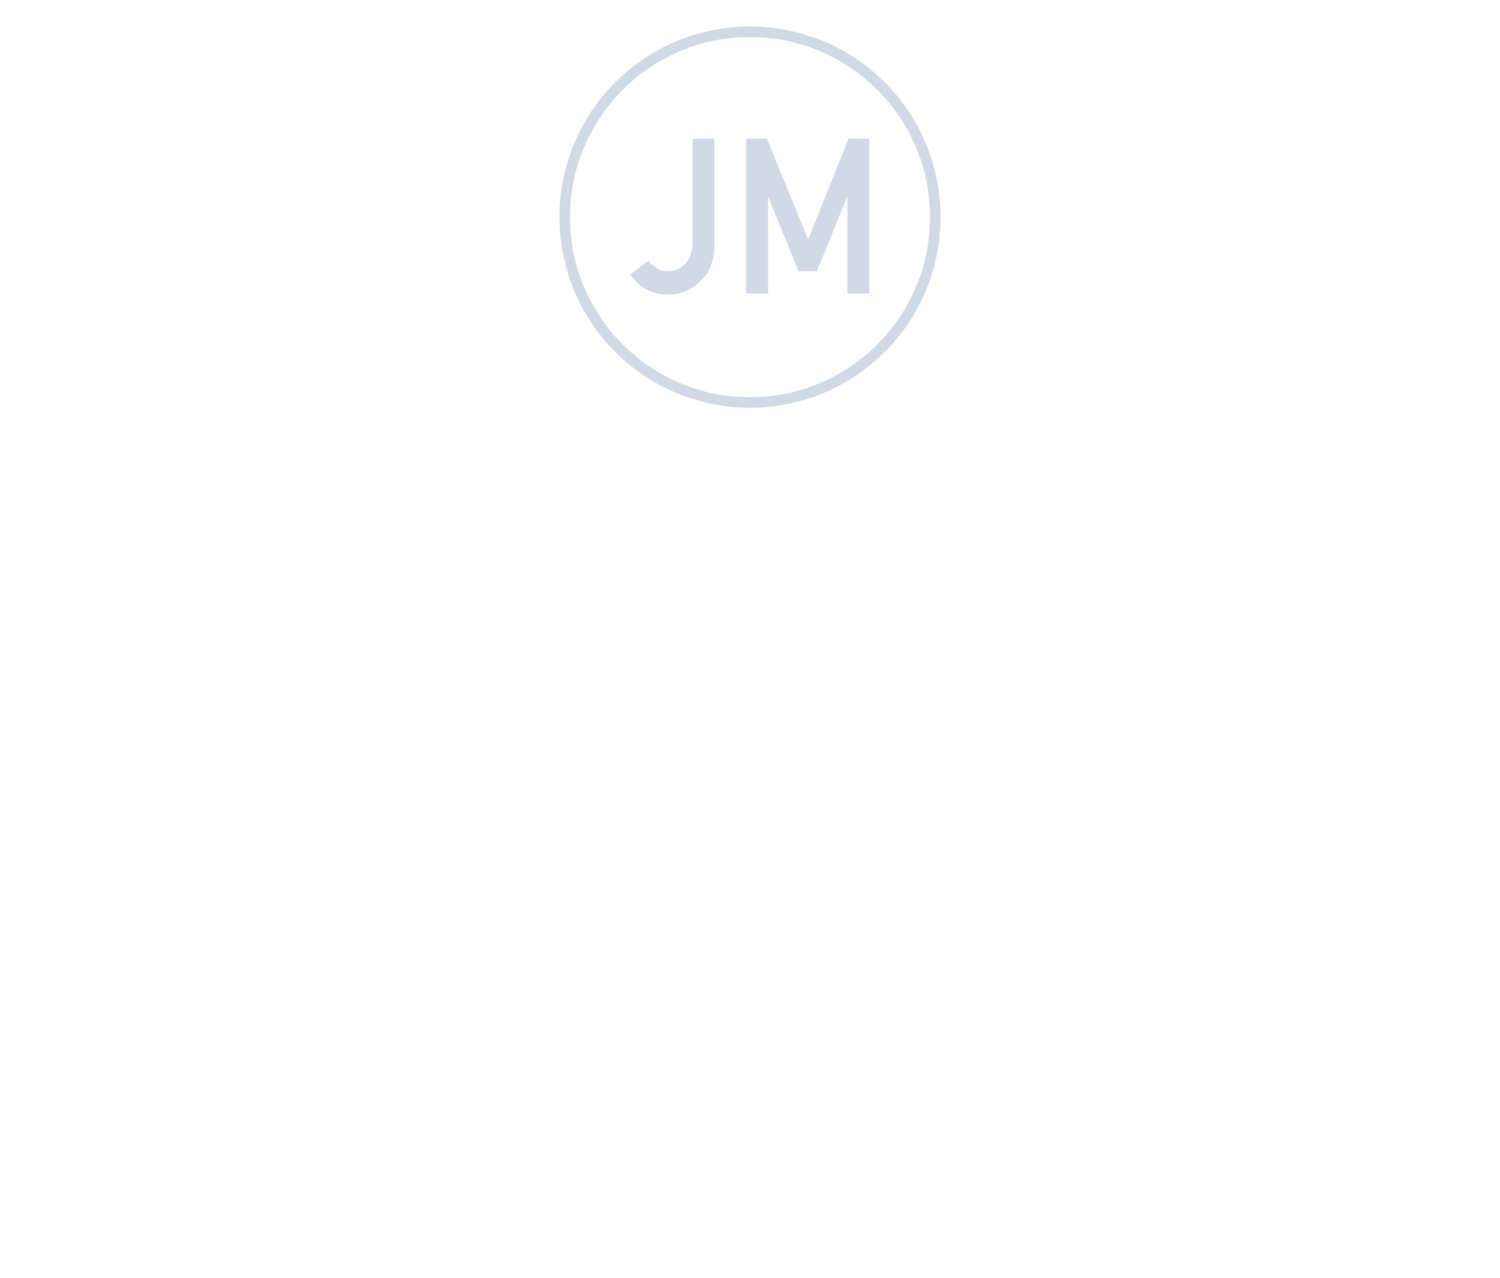 Jacob Moussai, M.D. Psychiatry